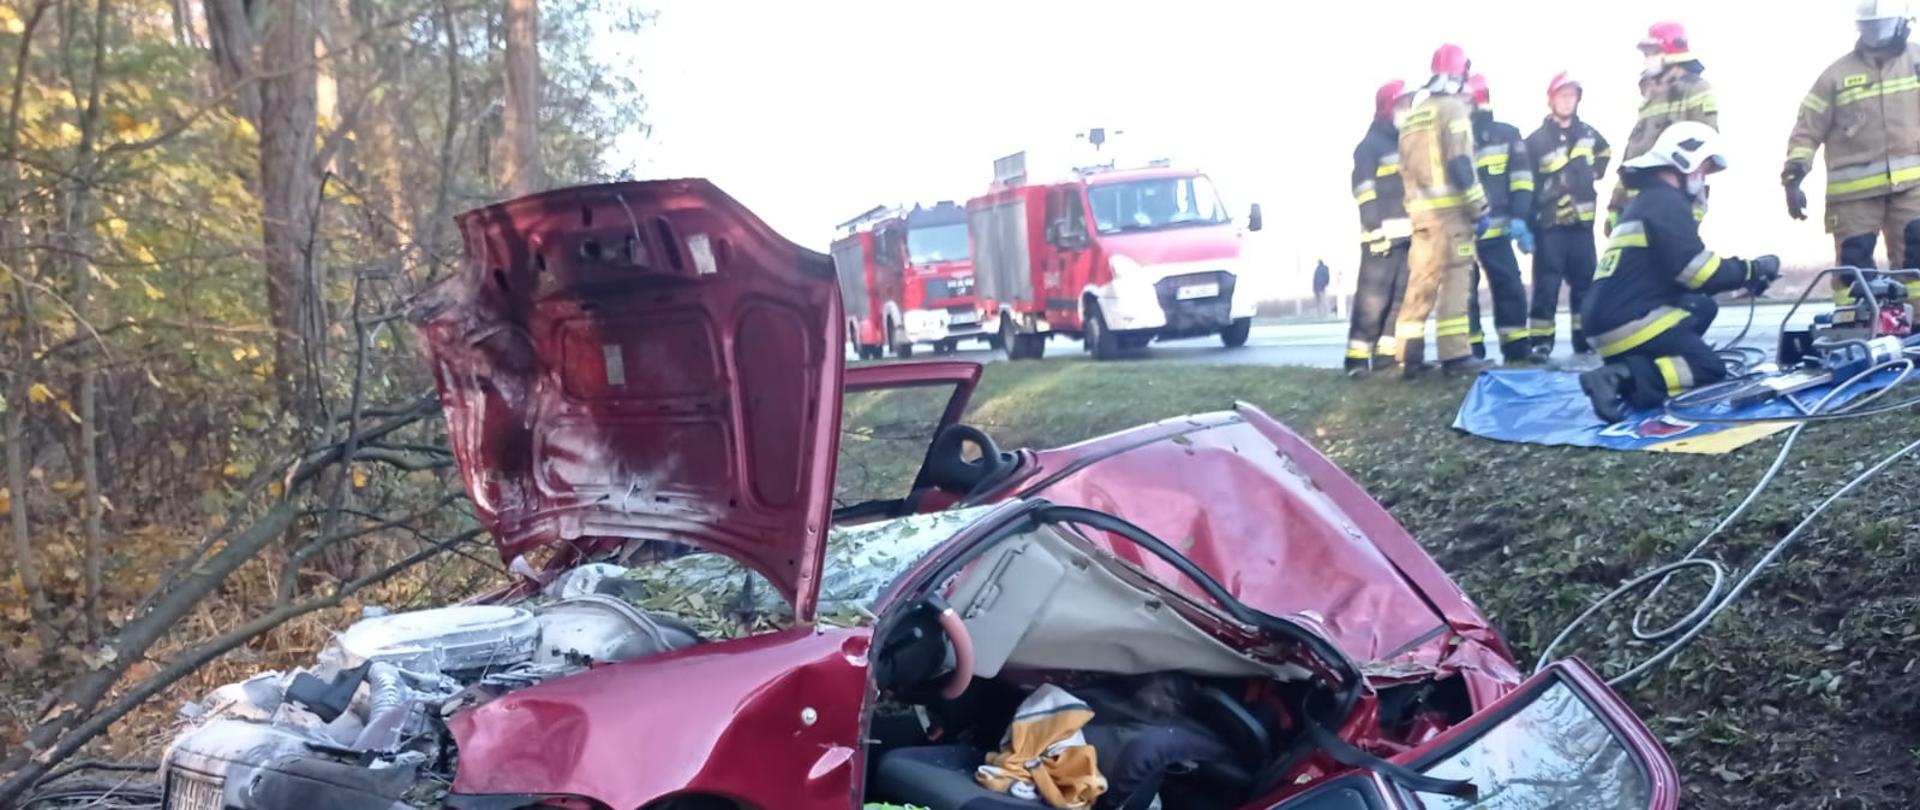 Wypadek drogowy na trasie krajowej pomiędzy w Rostarzewie